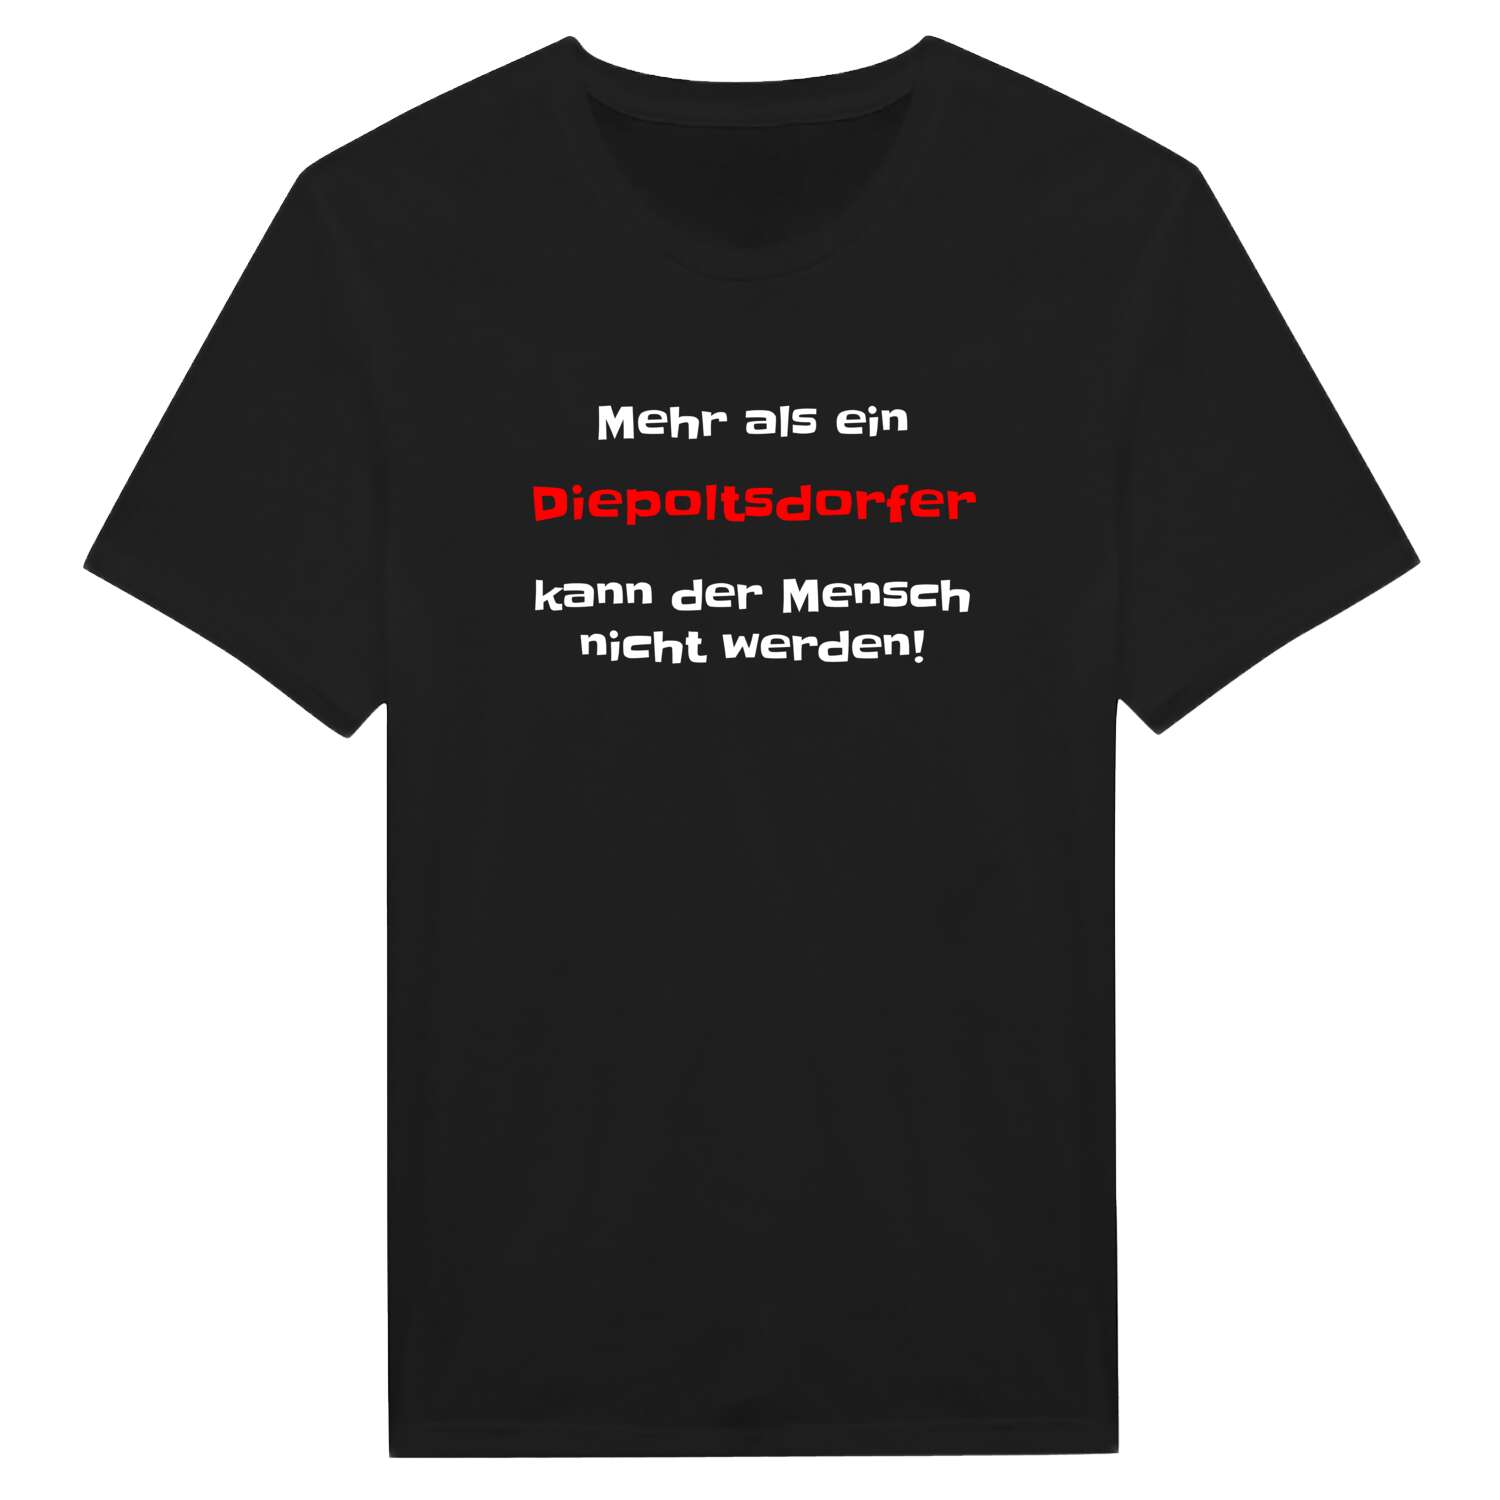 Diepoltsdorf T-Shirt »Mehr als ein«